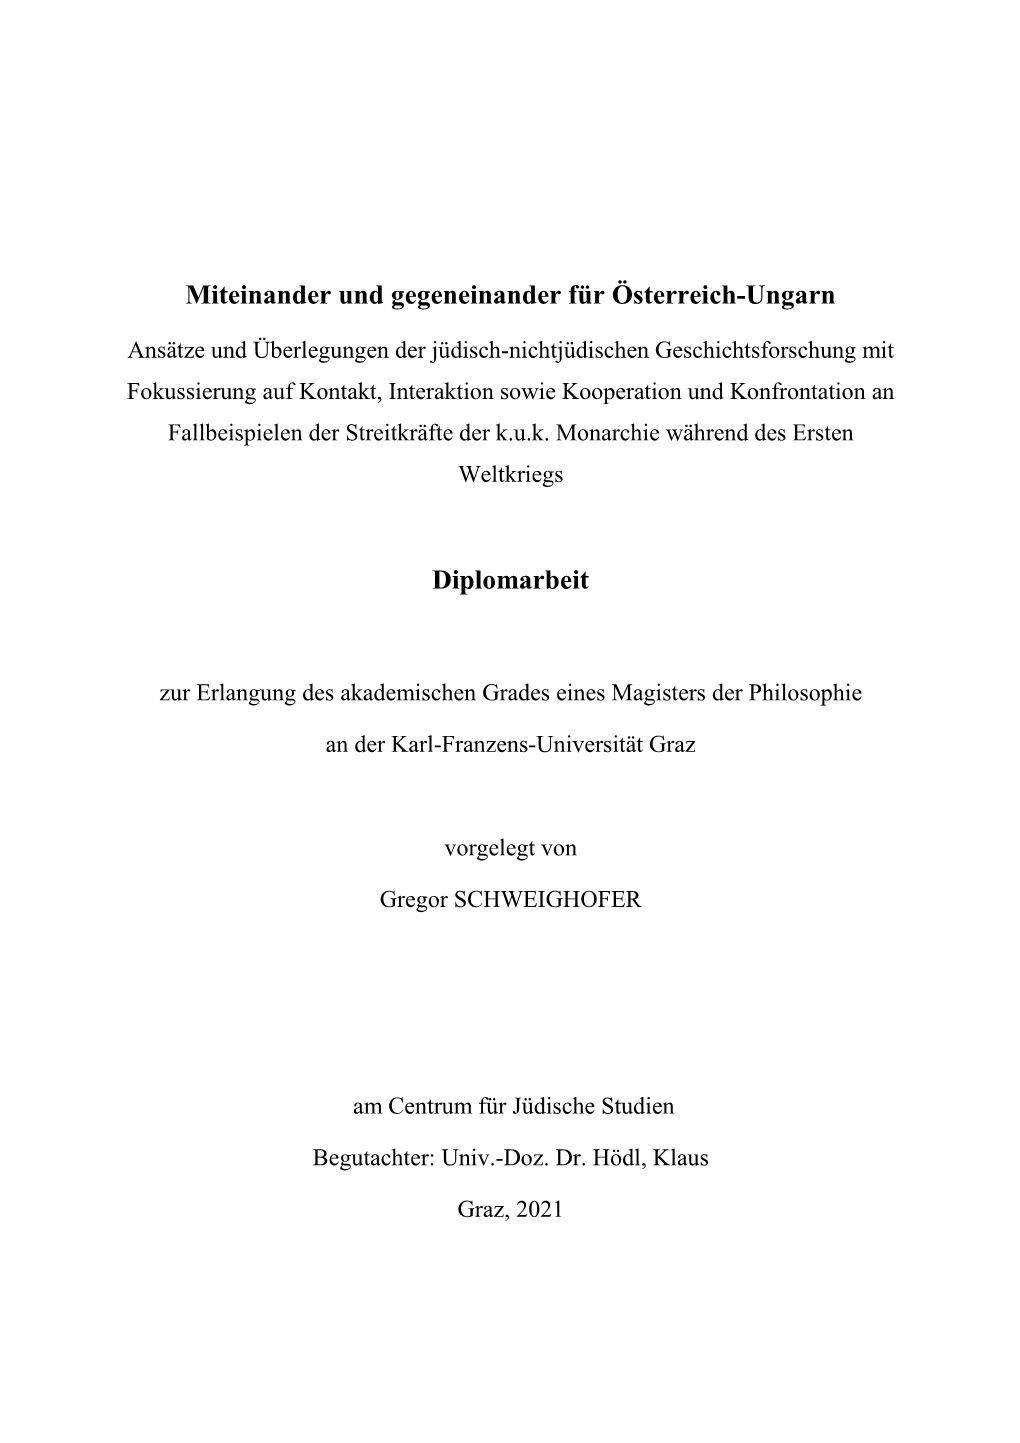 Miteinander Und Gegeneinander Für Österreich-Ungarn Diplomarbeit